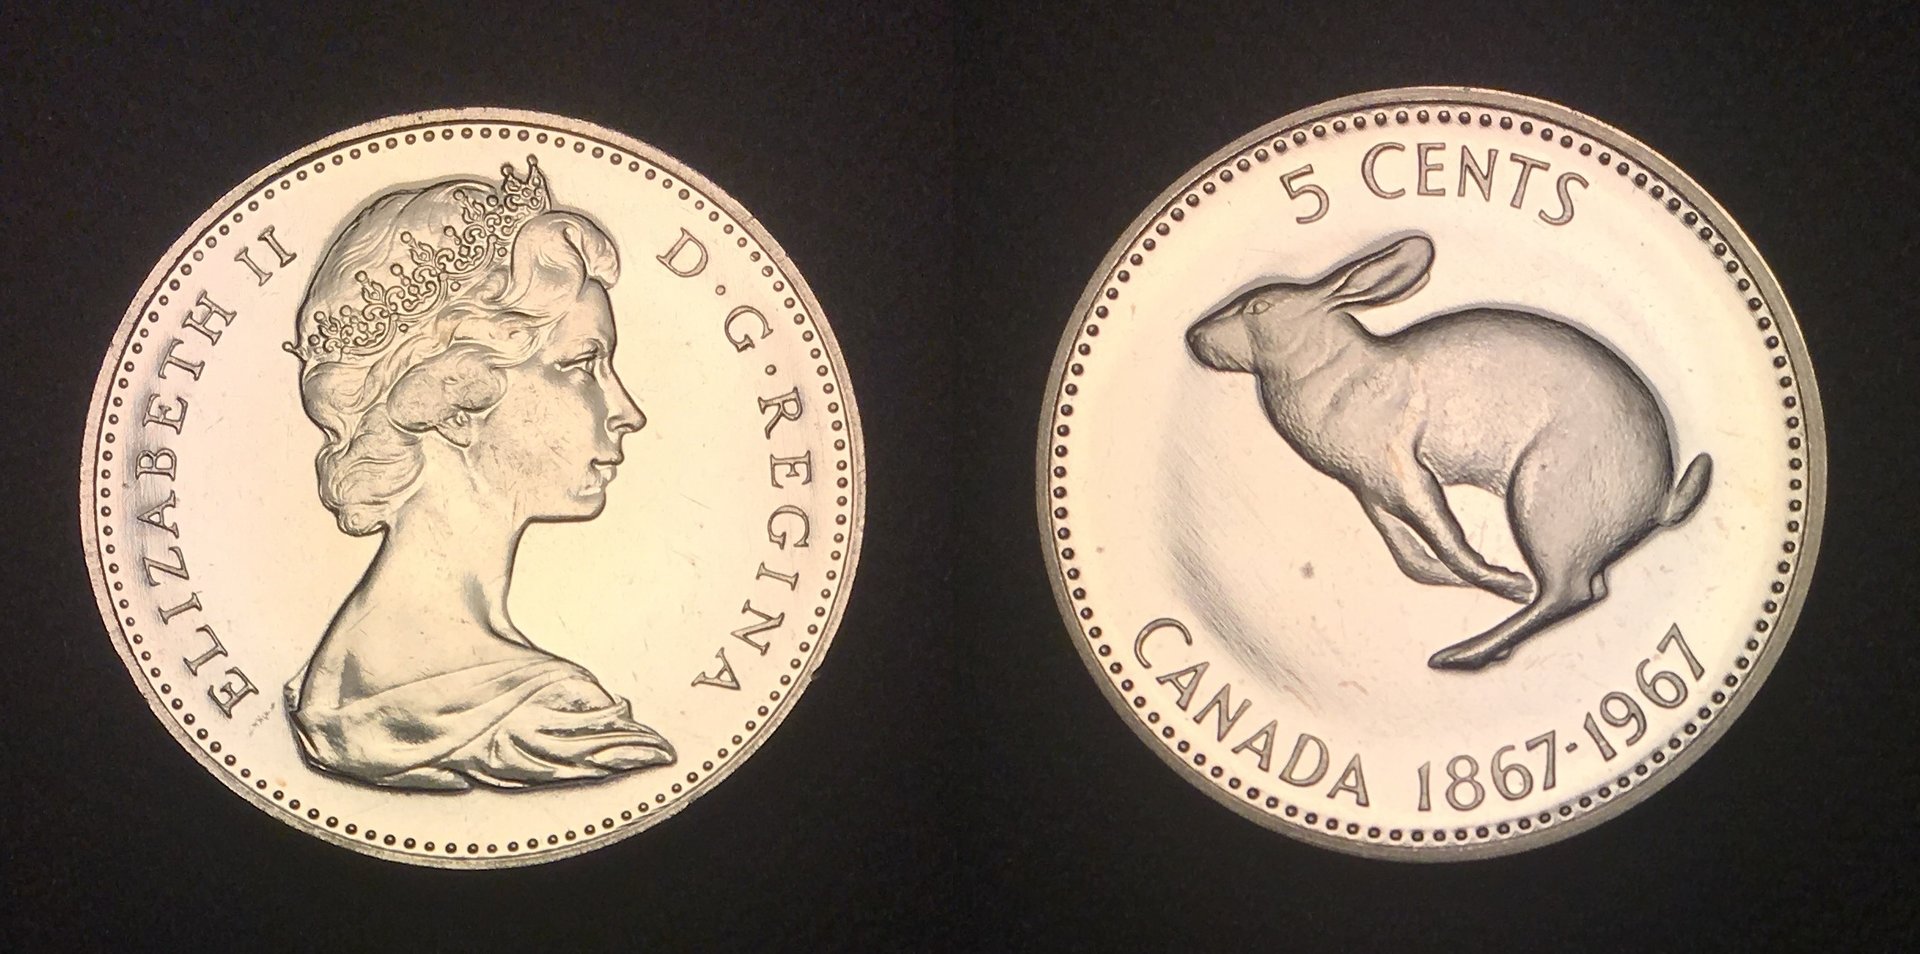 1967 5 Cents Centennial Combined.jpg